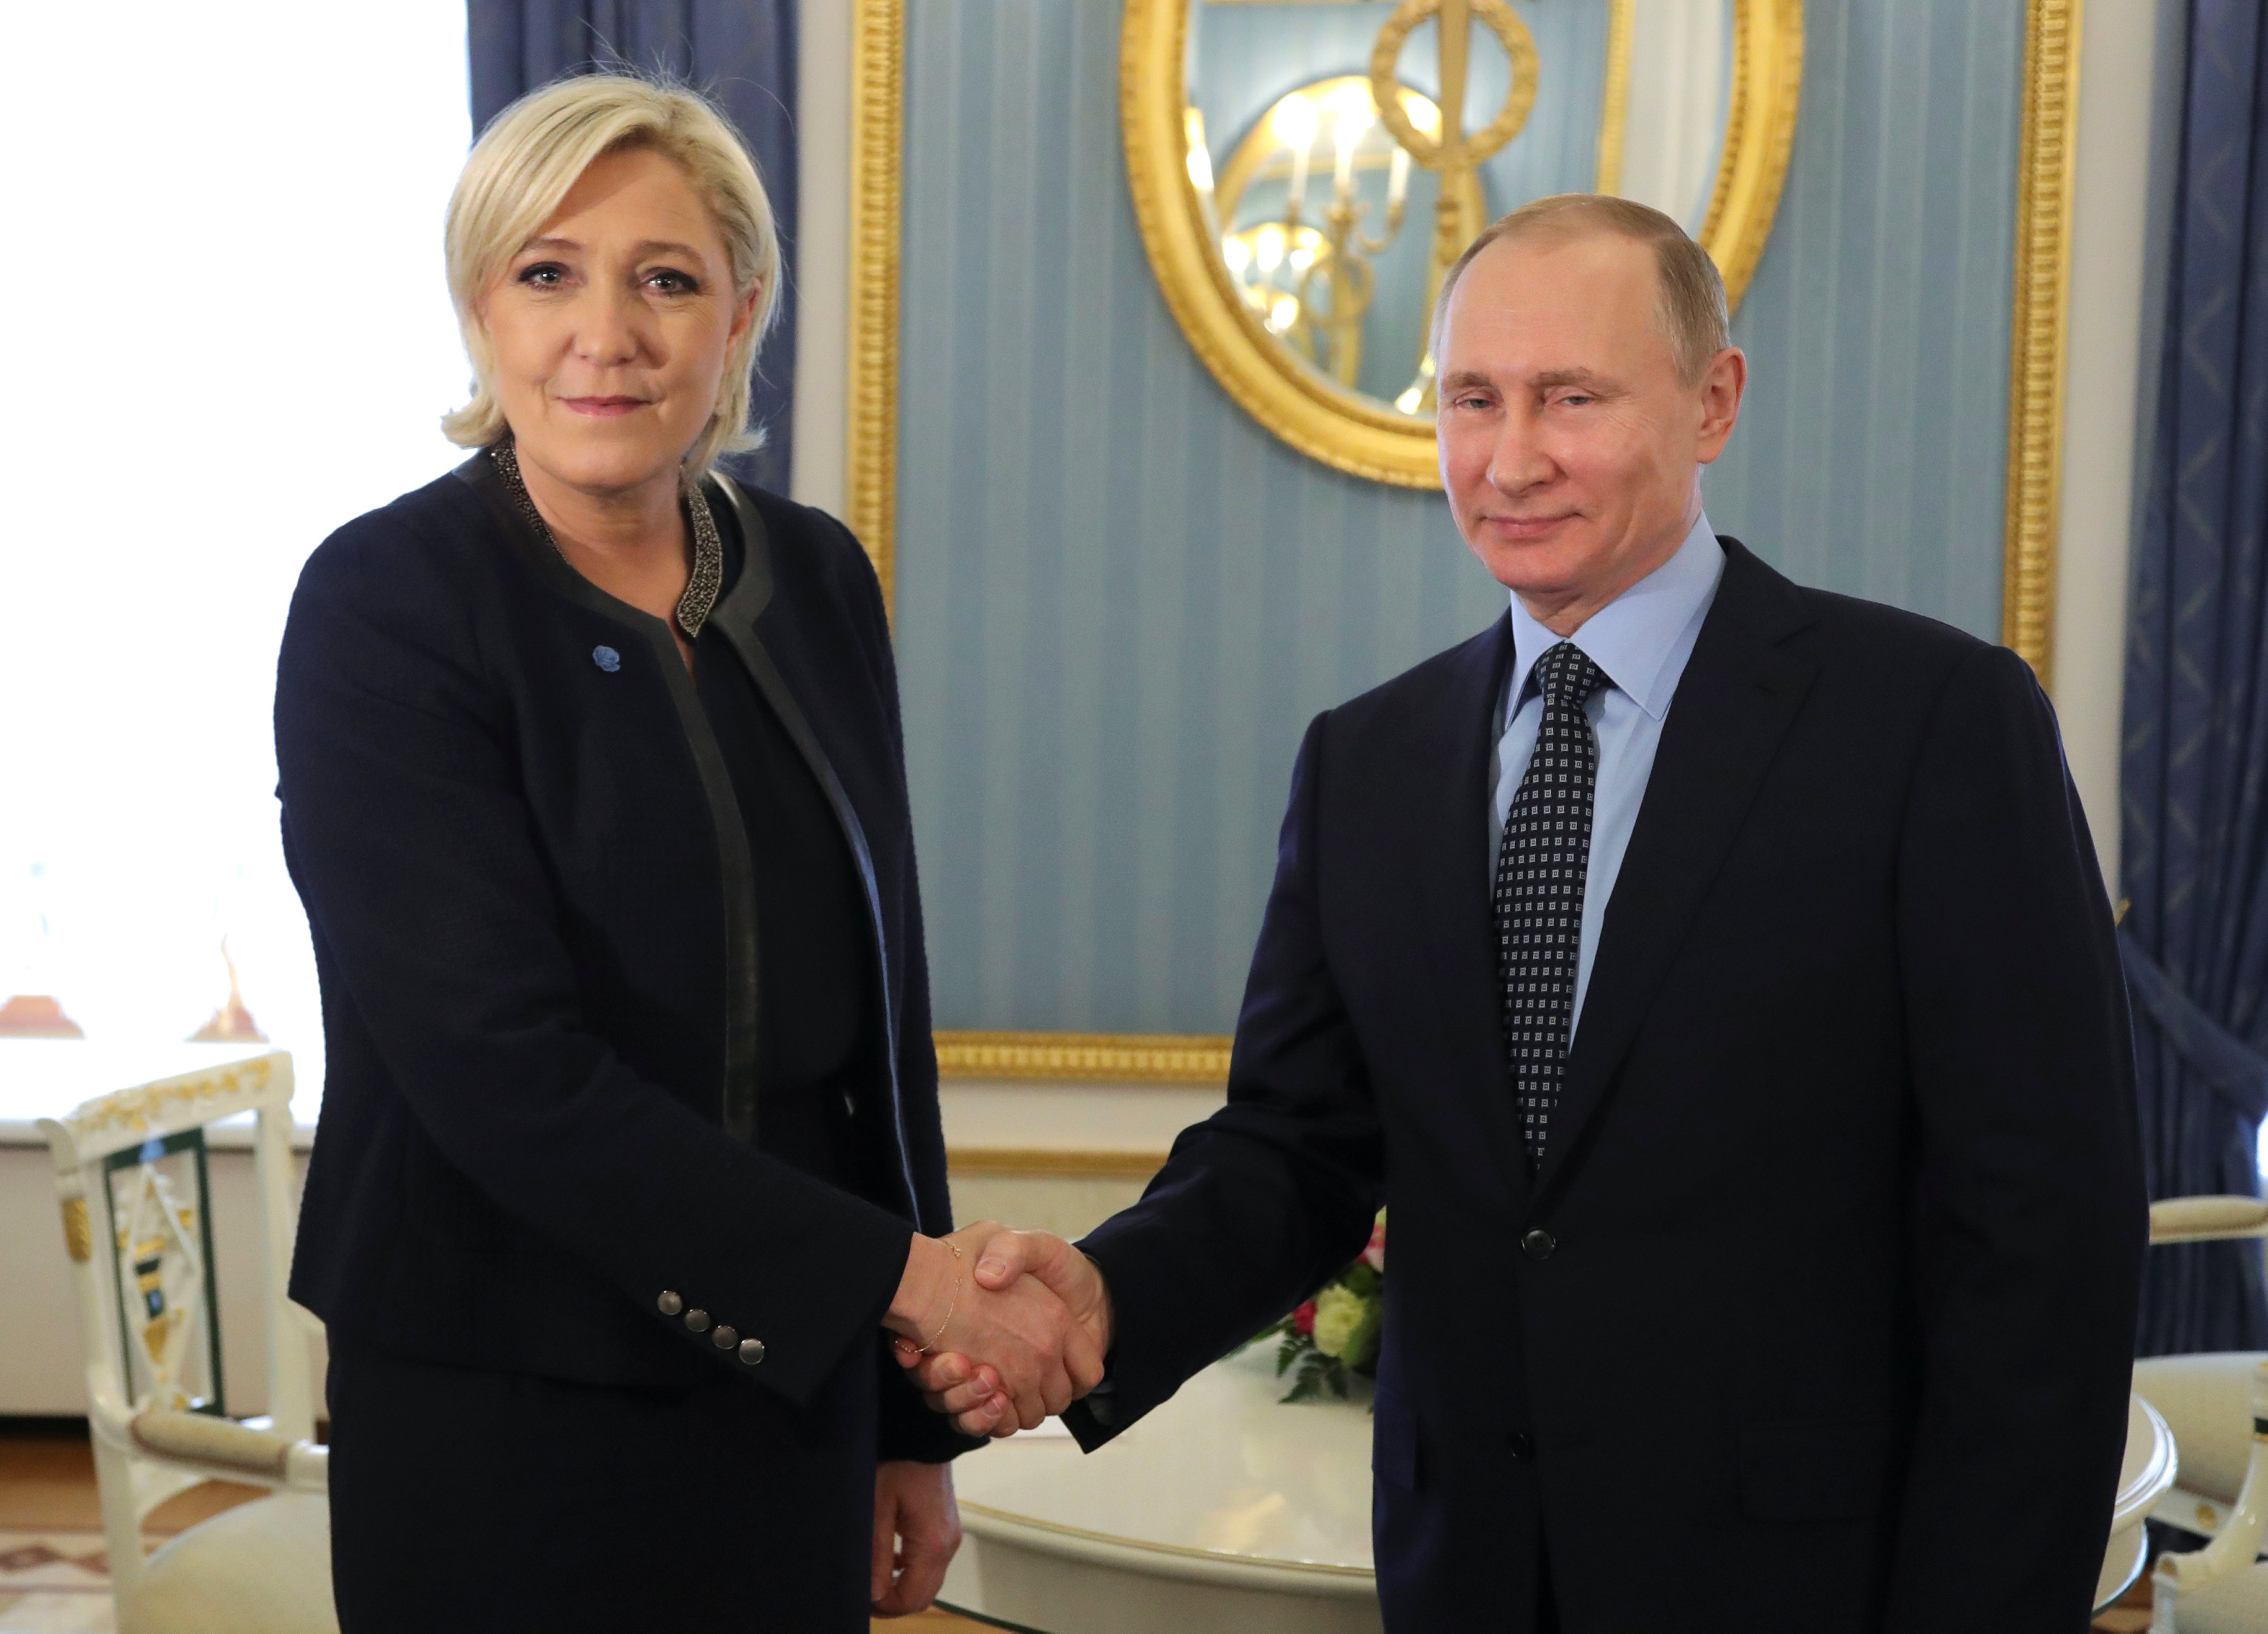 El presidente ruso, Vladimir Putin, estrecha su mano con Marine Le Pen, líder del partido político del Frente Nacional francés (FN) y candidata a las elecciones presidenciales francesas de 2017. (Reuters)